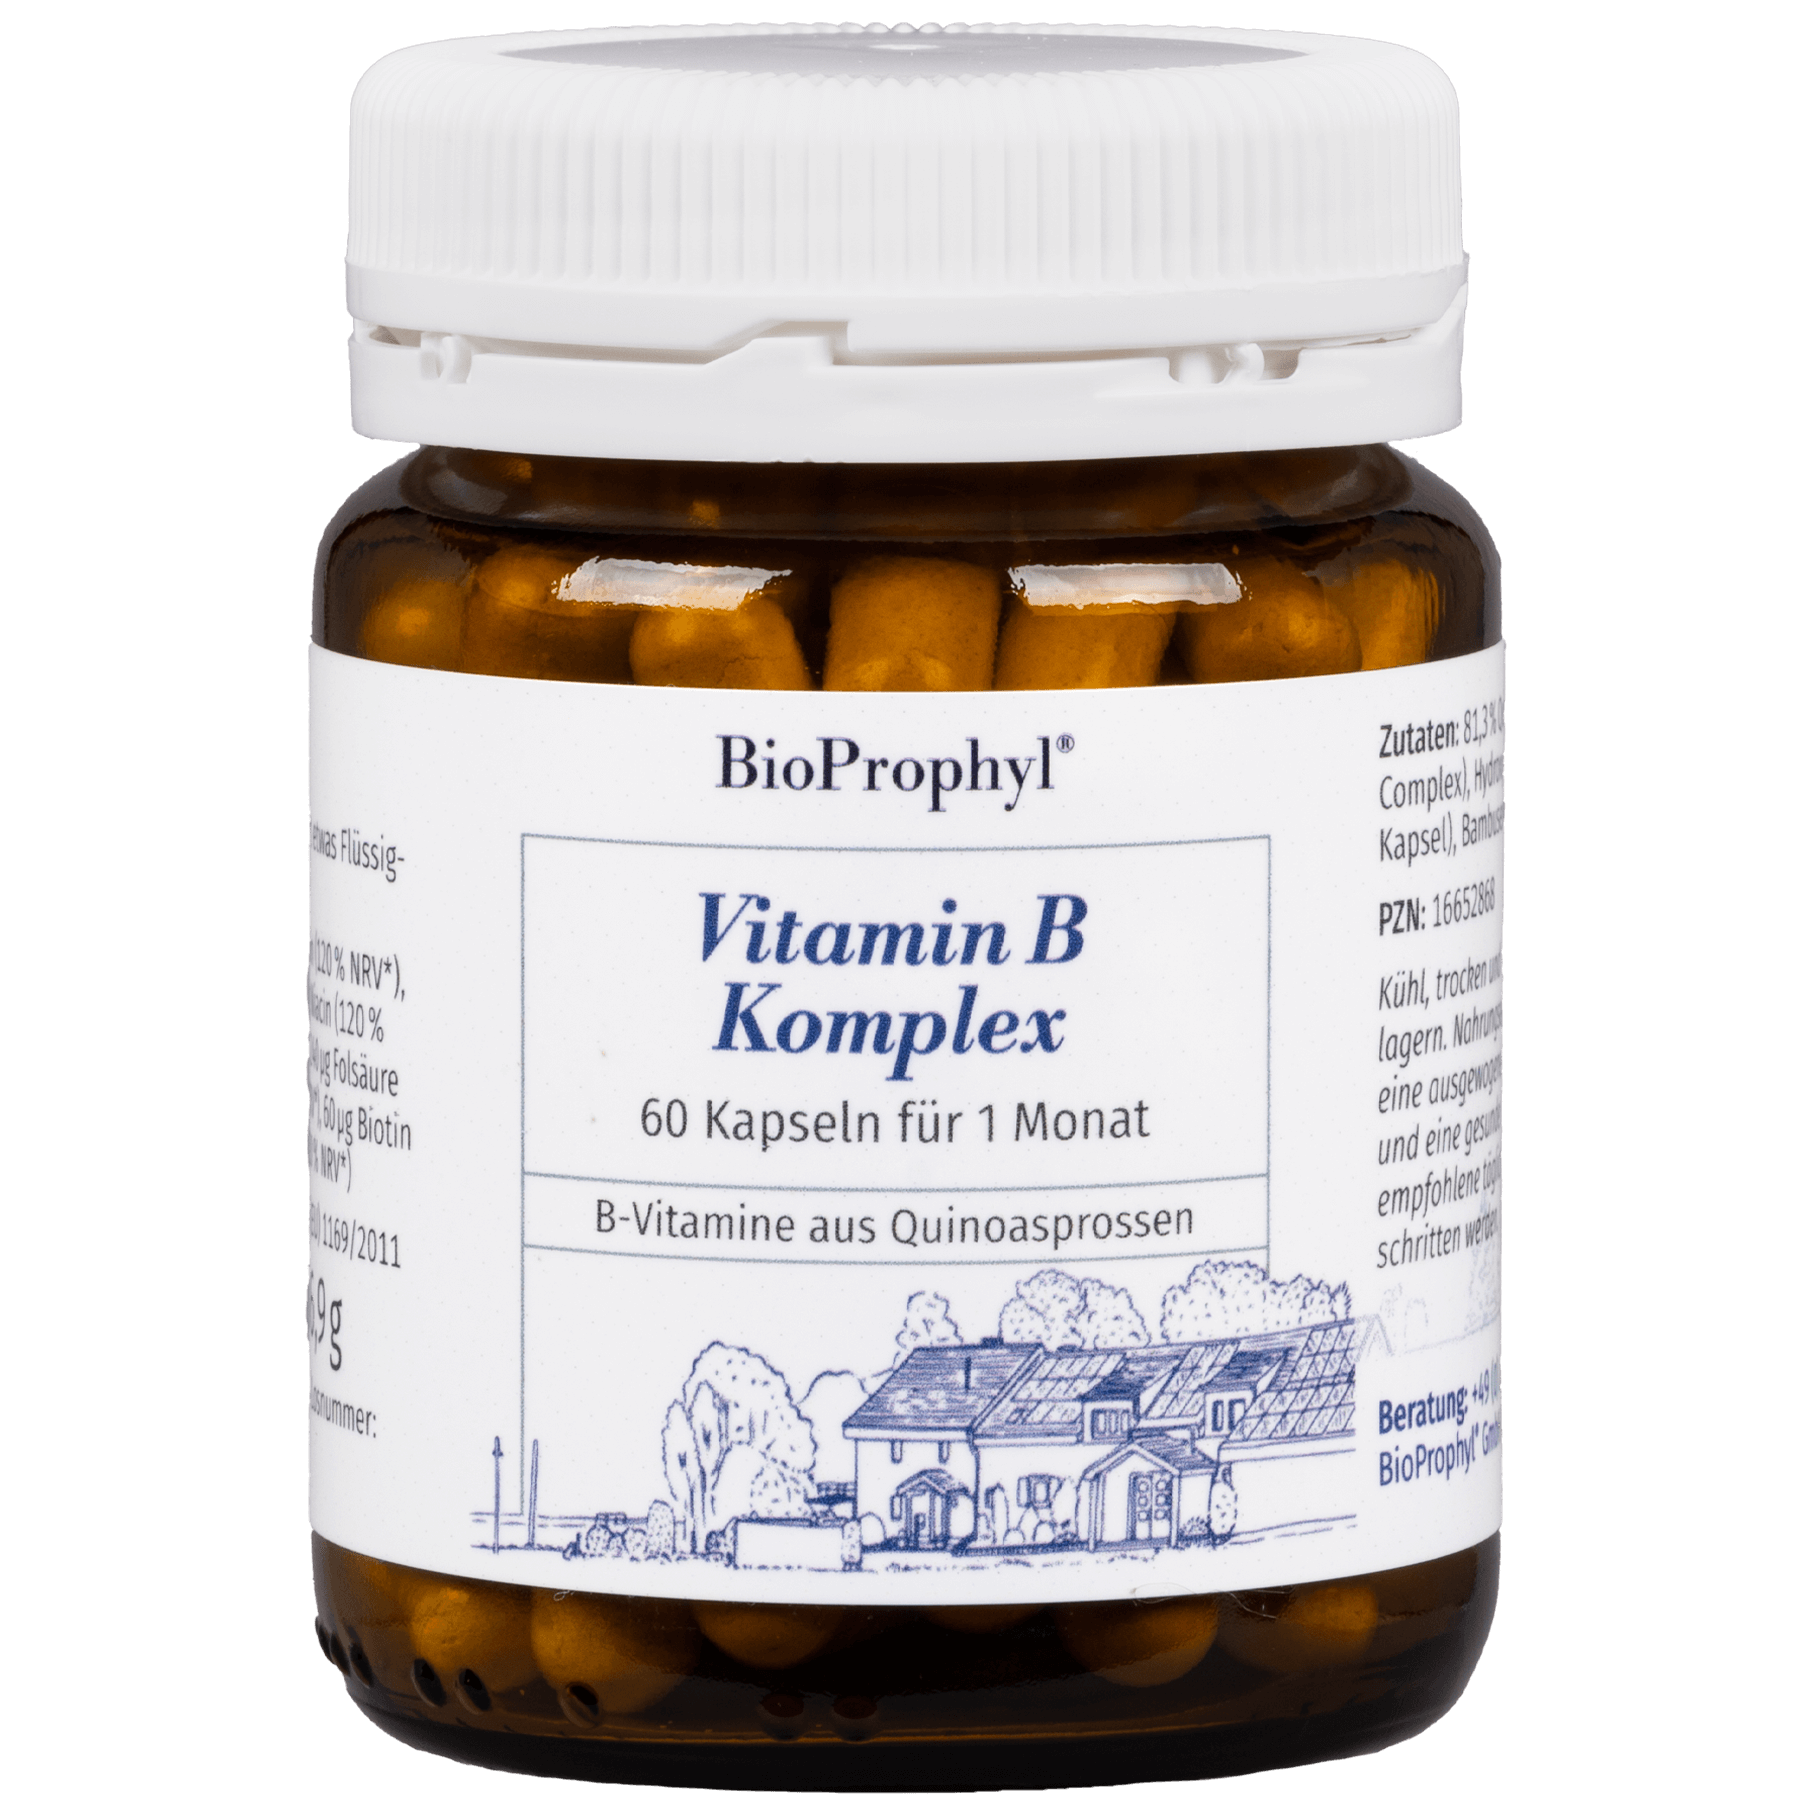 Vitamin B Komplex freigestelltes Produktbild